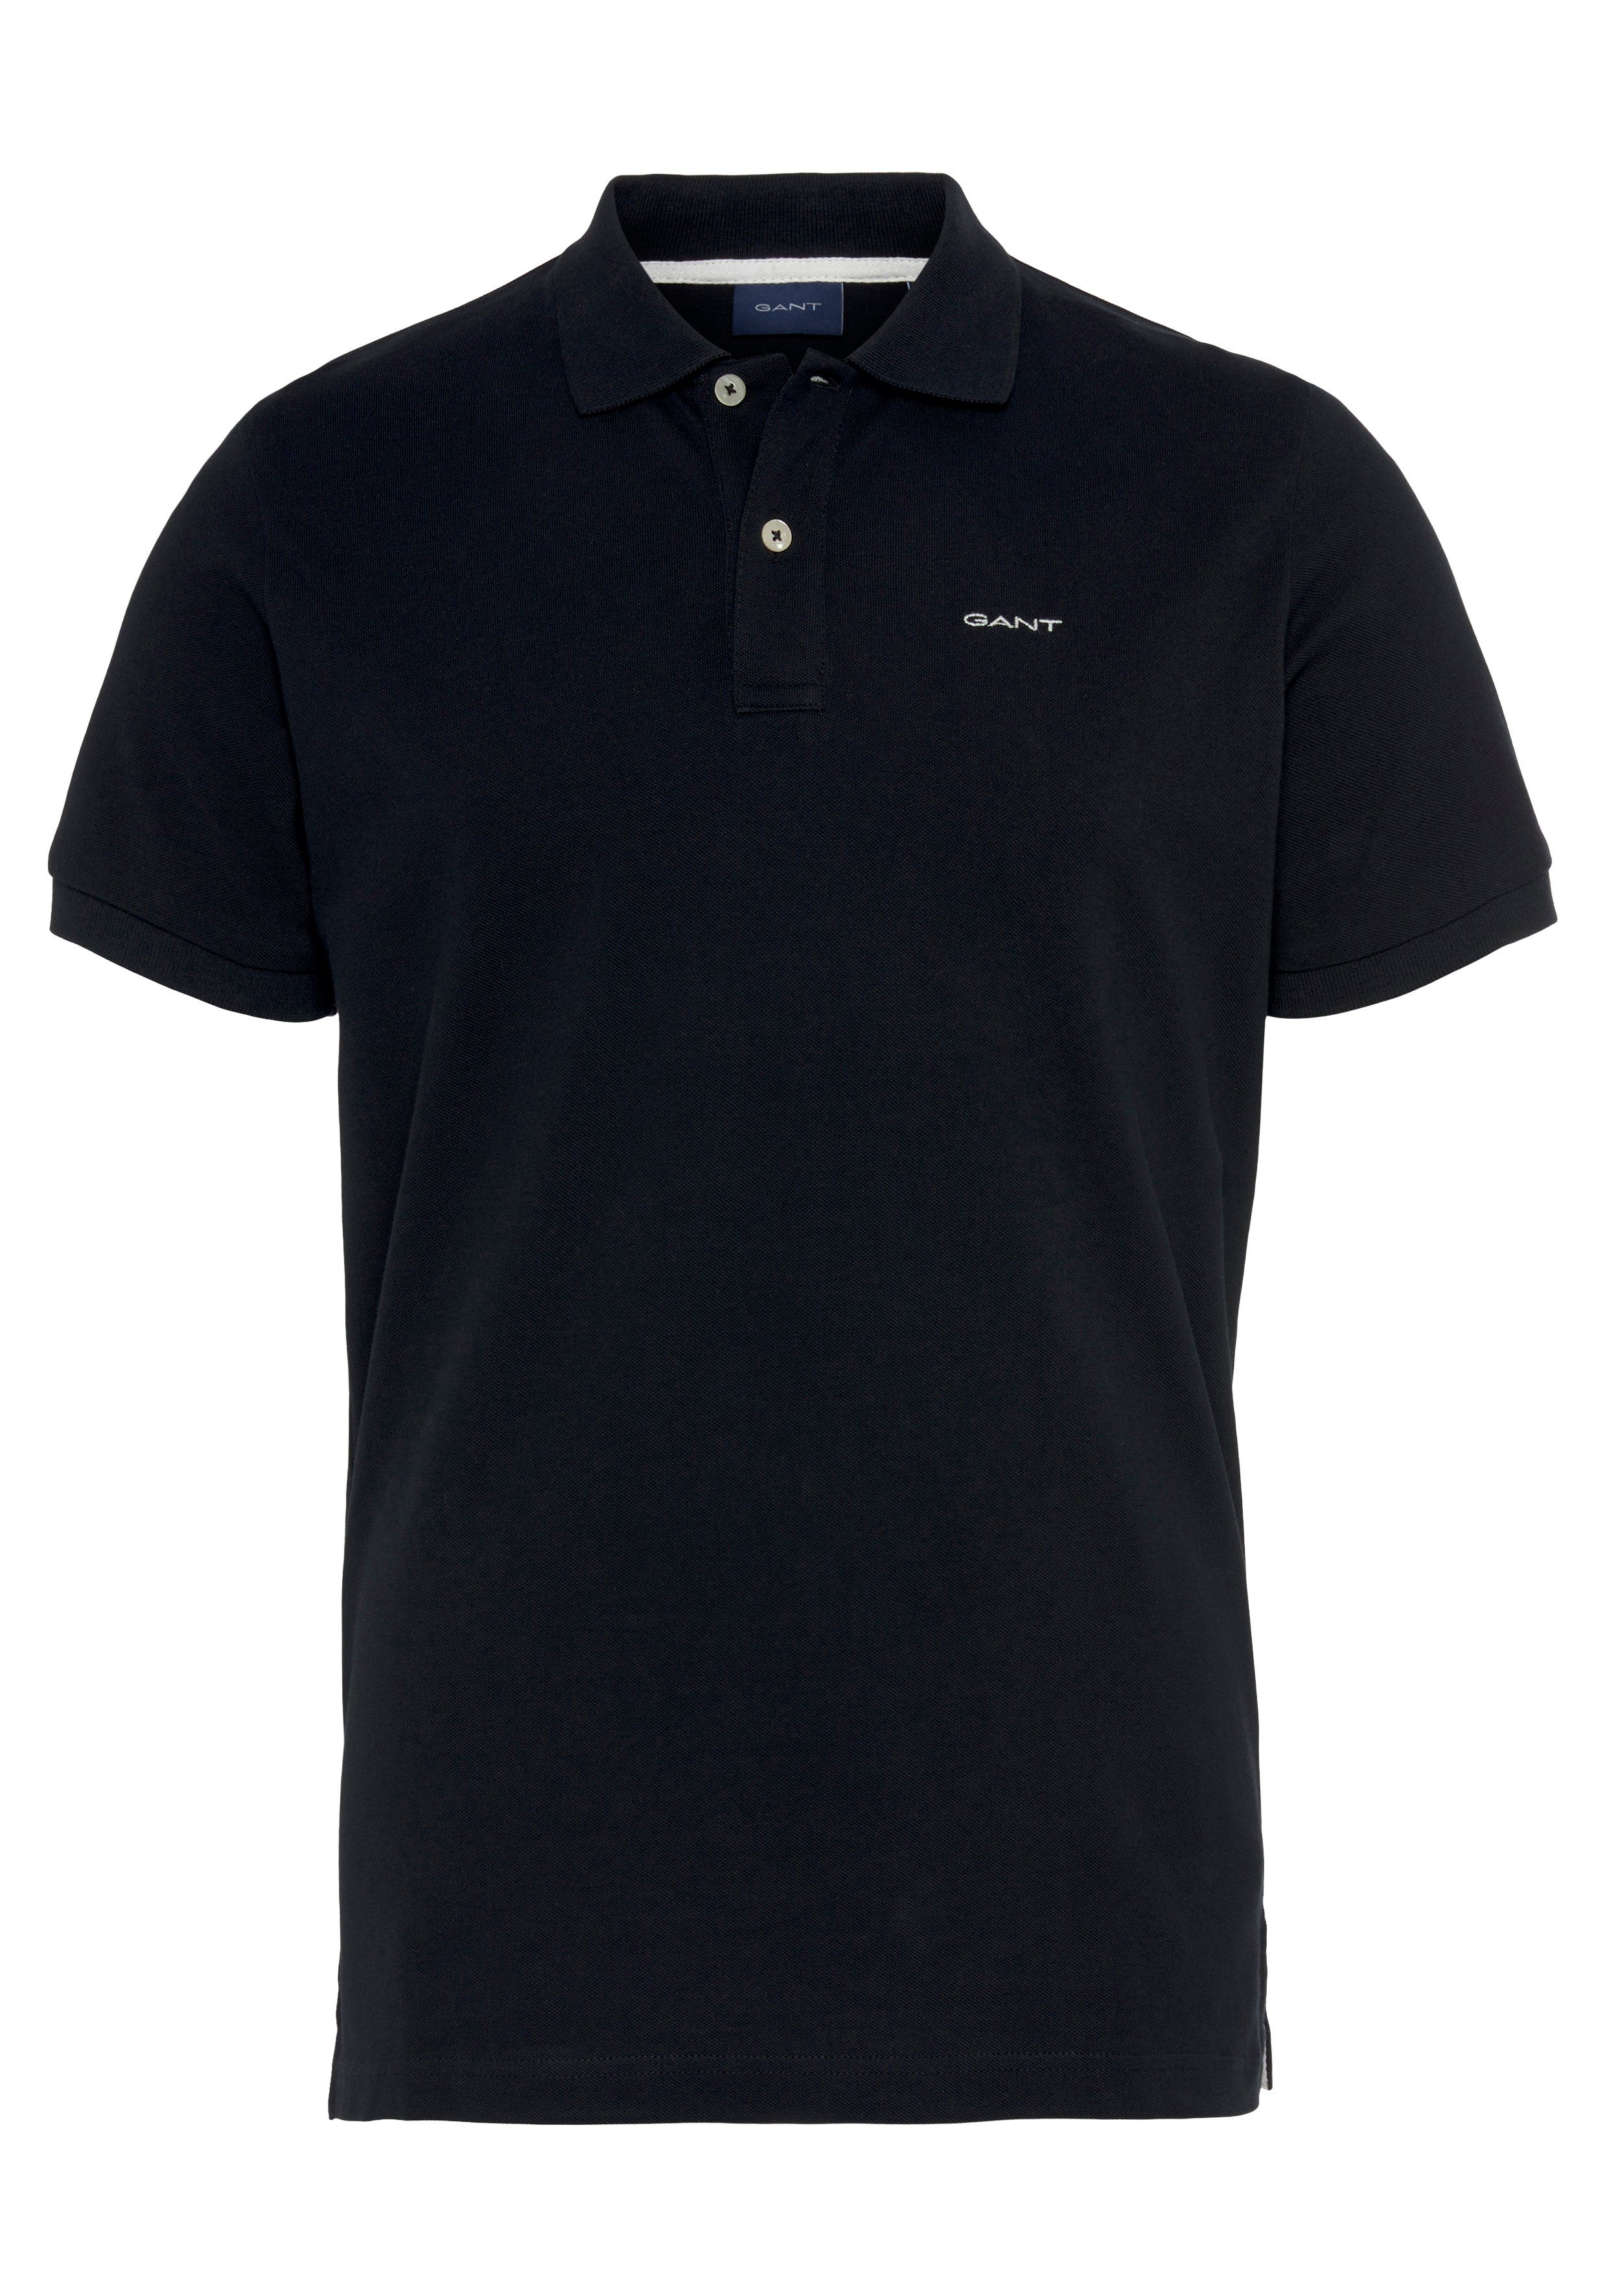 MD. Qualität Piqué-Polo Casual, schwarz Shirt, Gant KA RUGGER PIQUE Smart Poloshirt Fit, Regular Premium